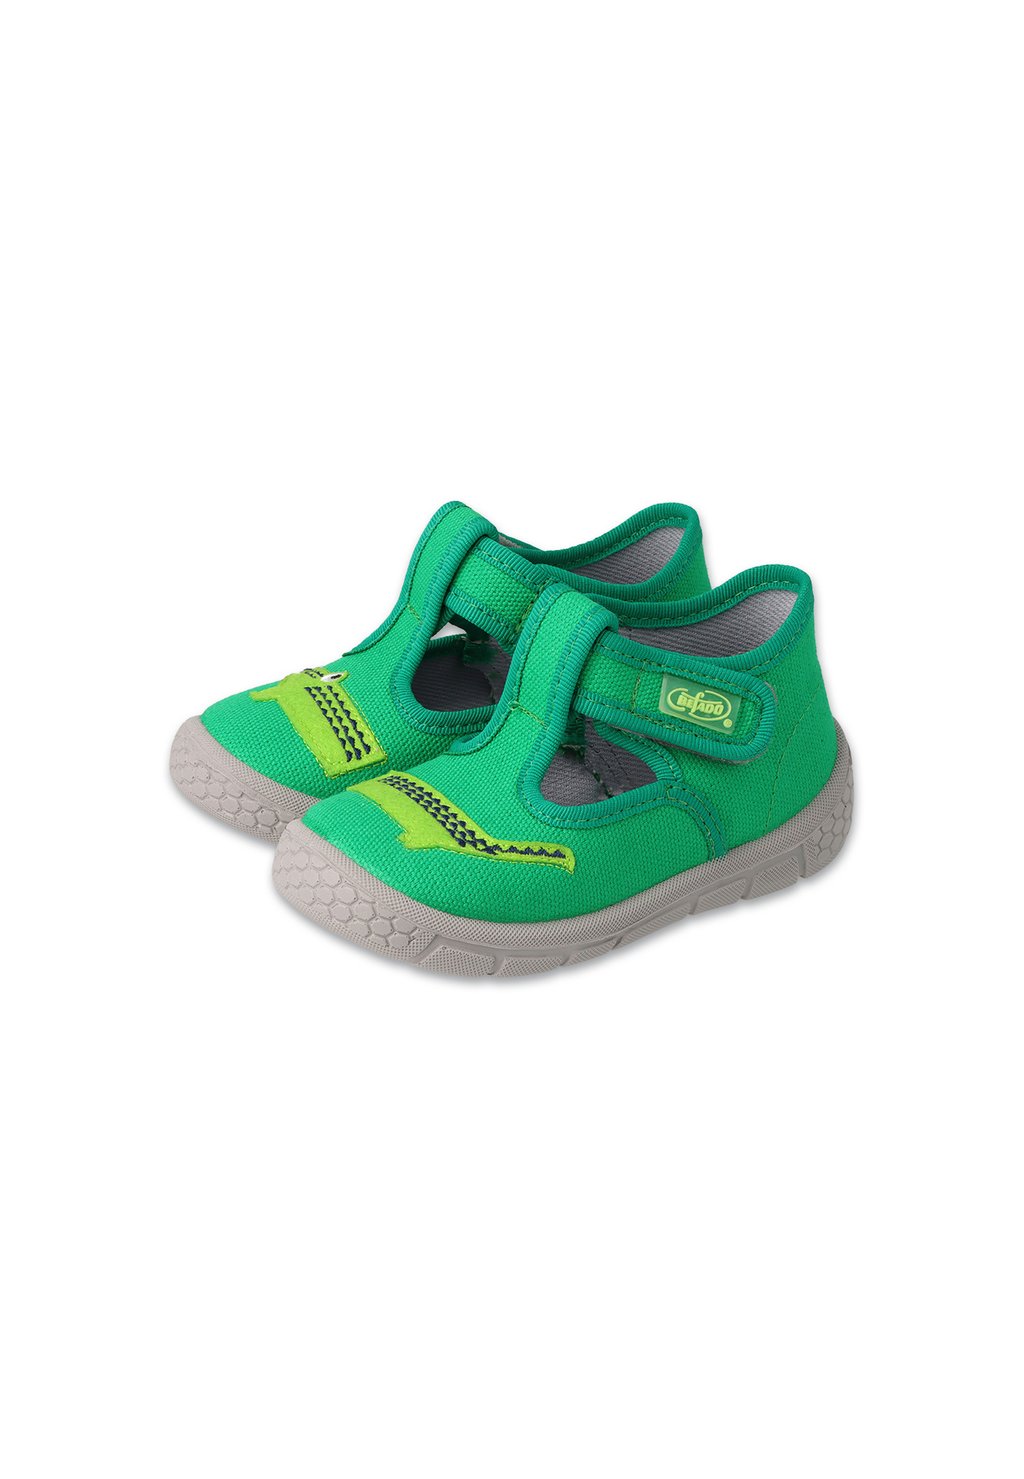 Обувь для обучения ходьбе Befado, зеленый